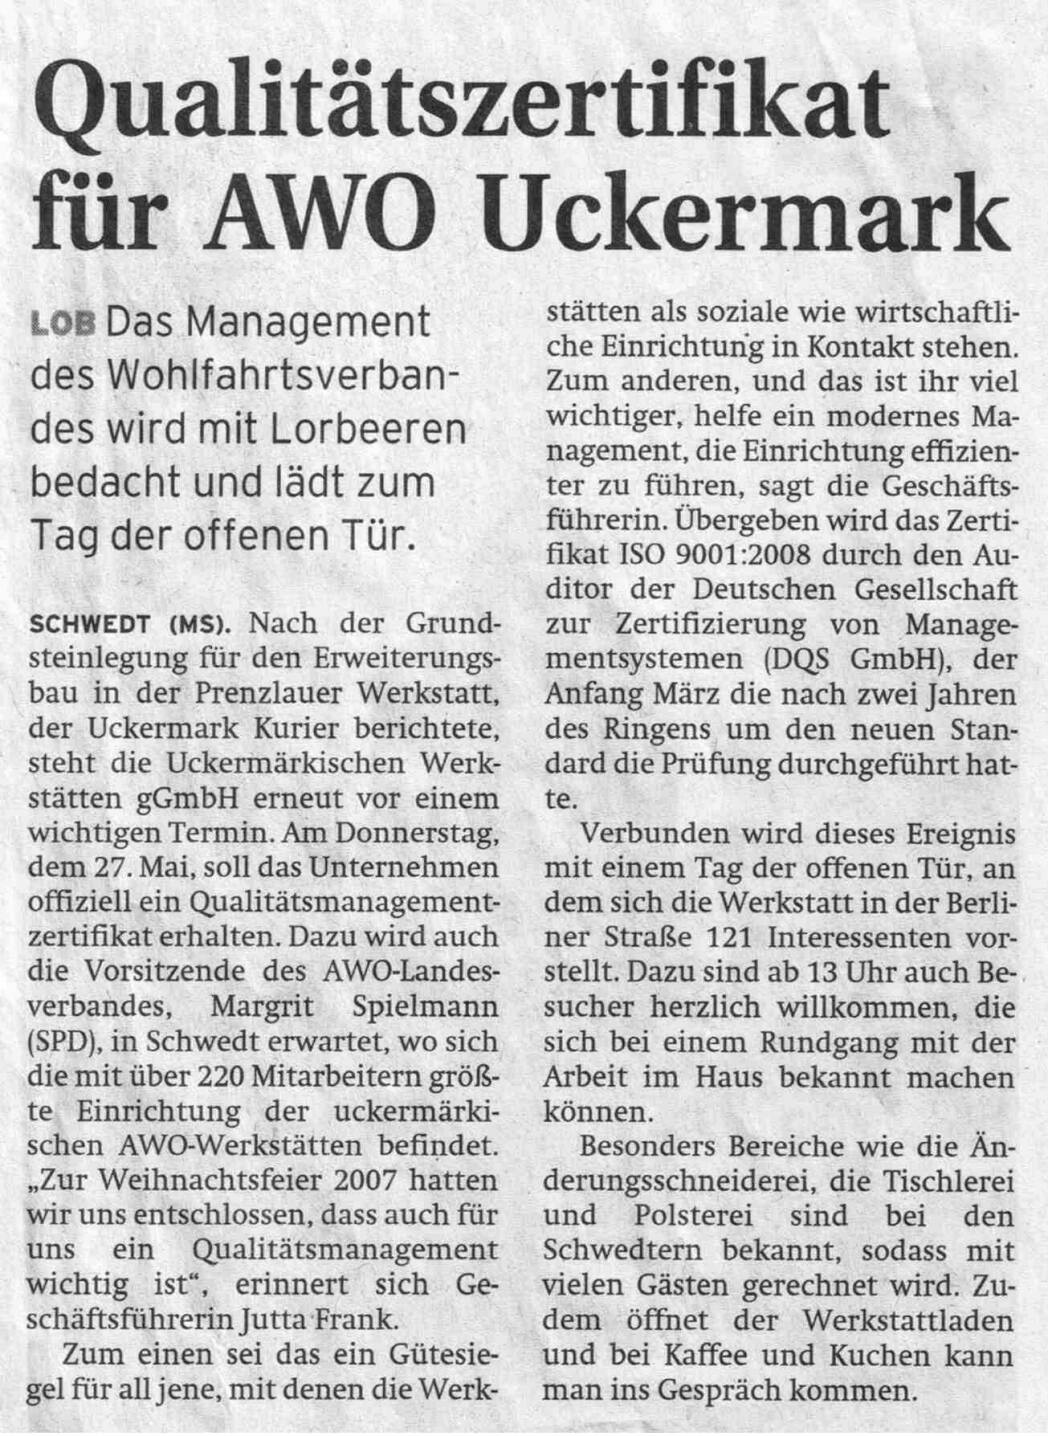 Prenzlauer Zeitung - Qualitätszertifikat für AWO Uckermark [JPG]